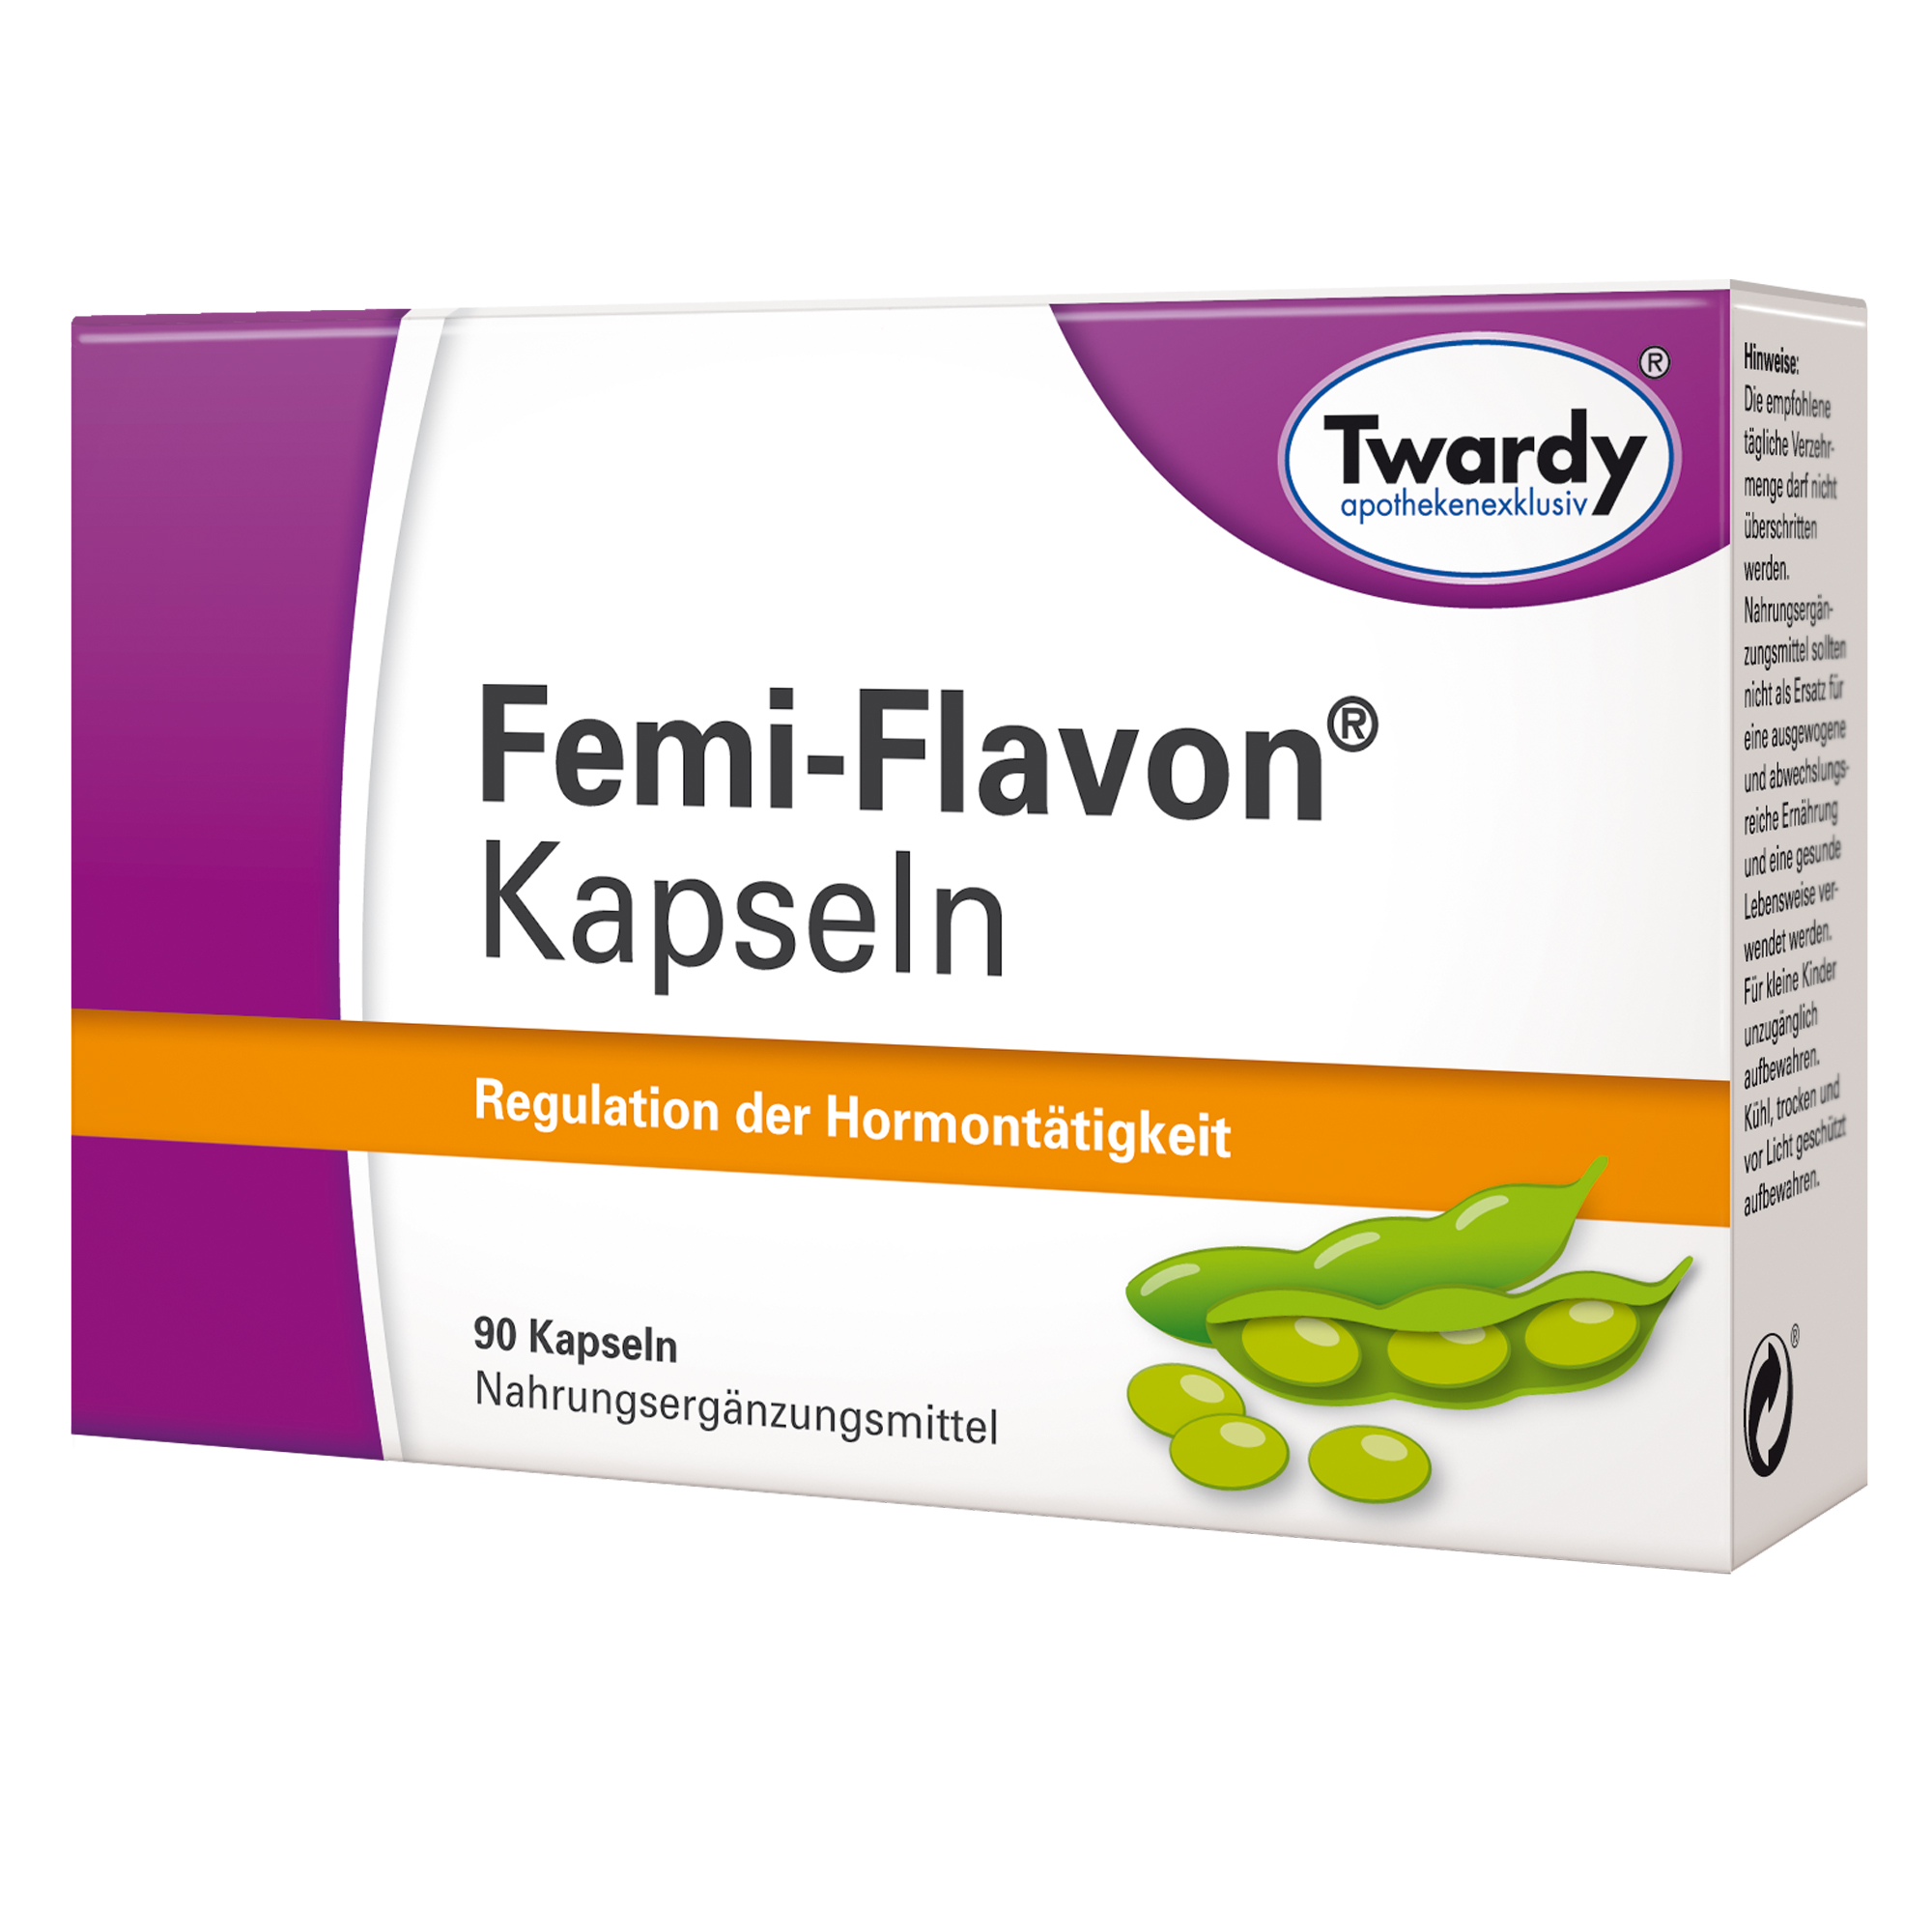 Femi-Flavon® Kapseln – PZN 03481448